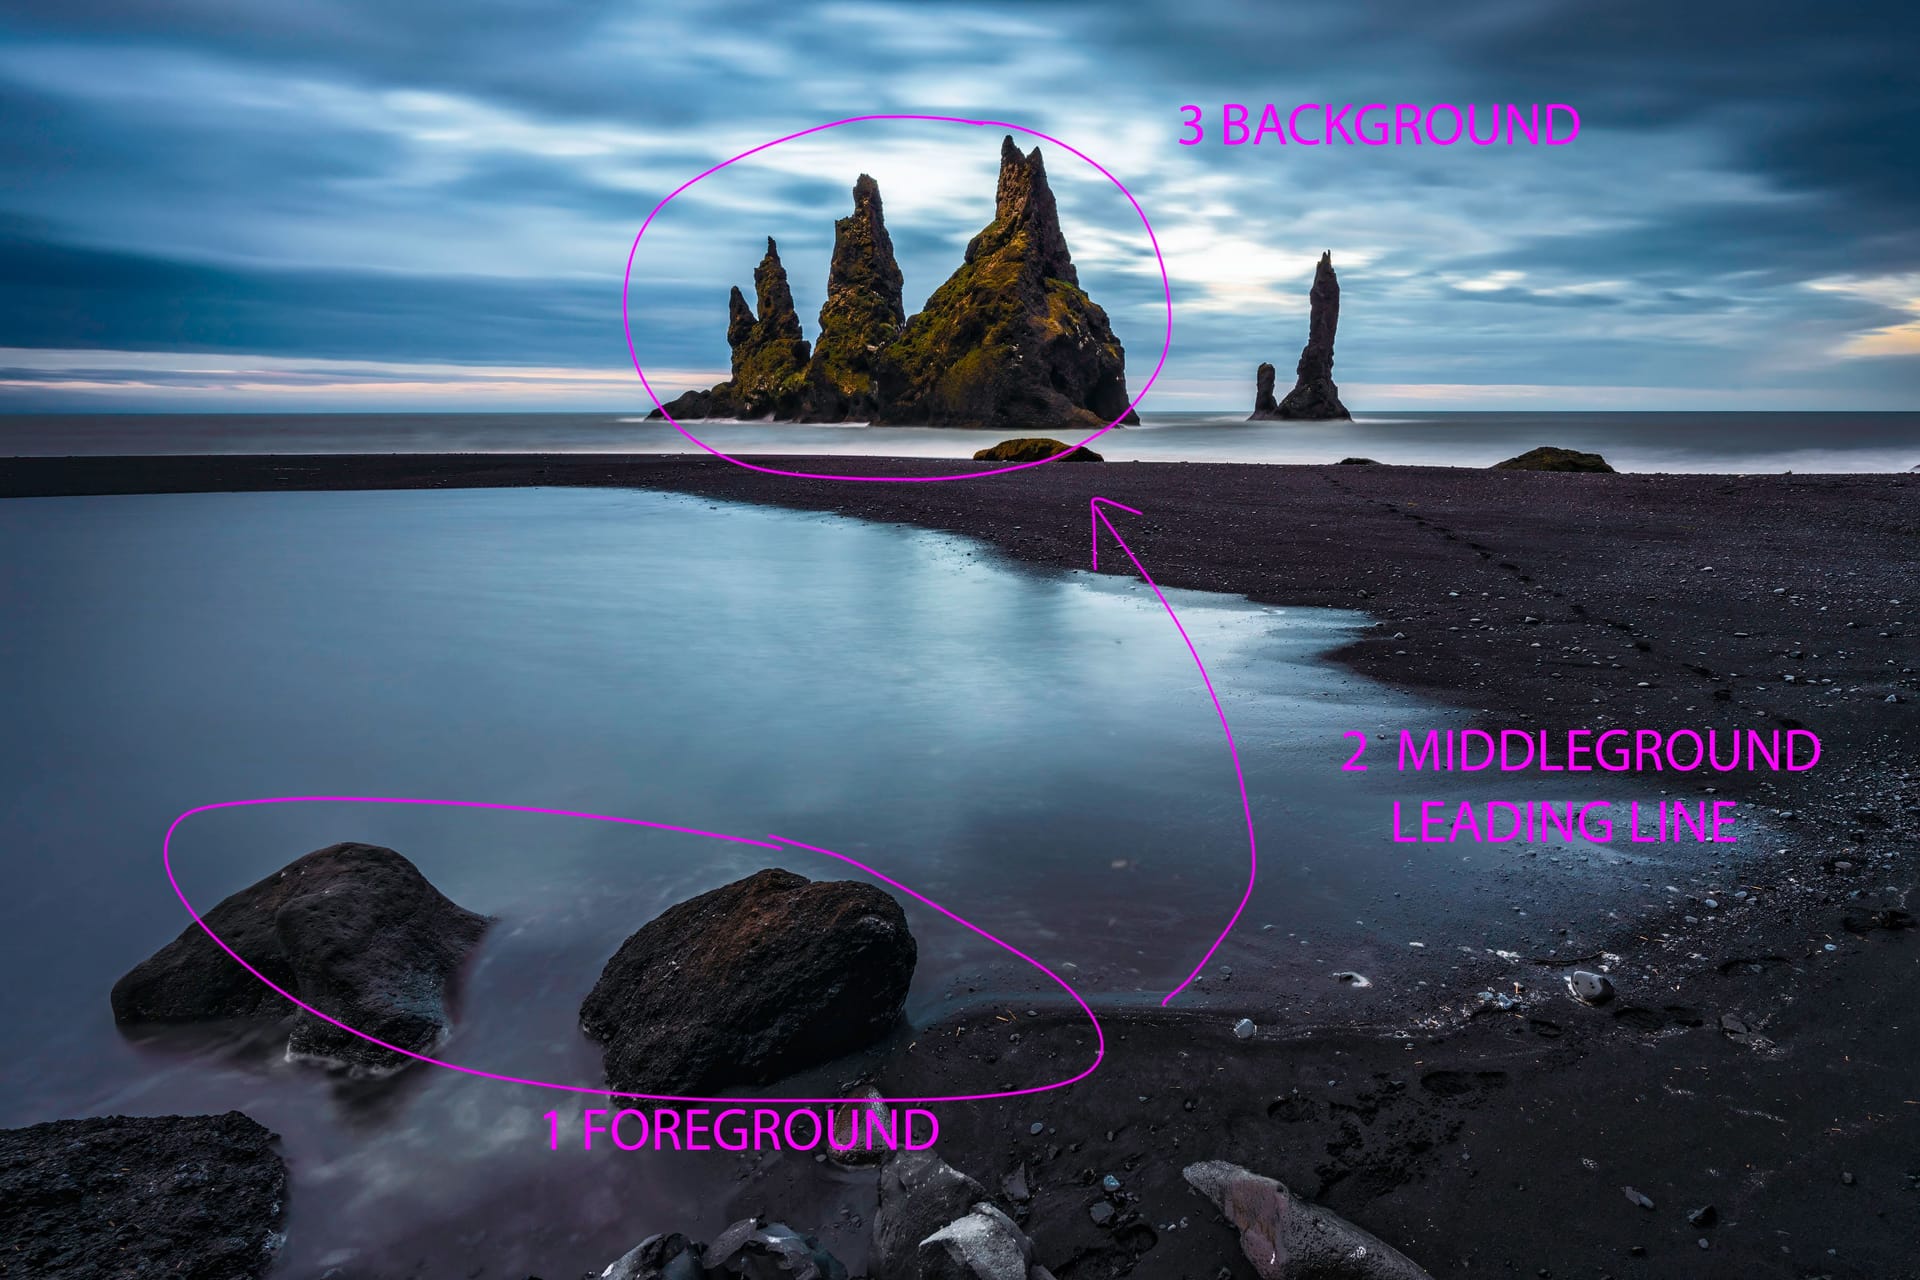 Eine Aufnahme aus Island: Keller hat markiert, wie Vordergrund, Mittelgrund und Hintergrund eine perfekte Komposition erzeugen.